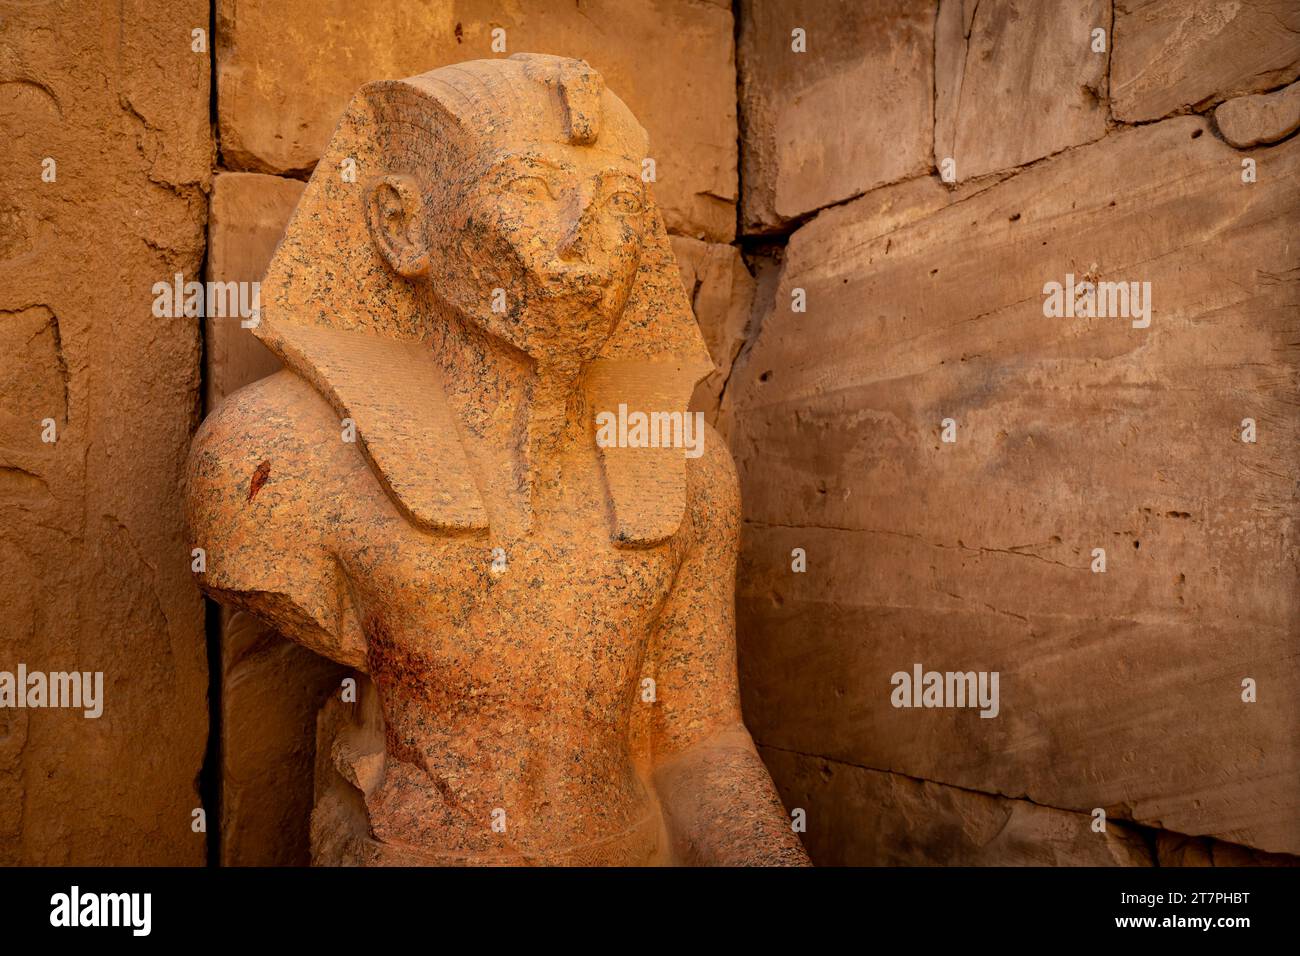 Grande statua in pietra pharo nelle antiche rovine del complesso del Tempio di Karnak nella città del deserto egiziano di Luxor Foto Stock